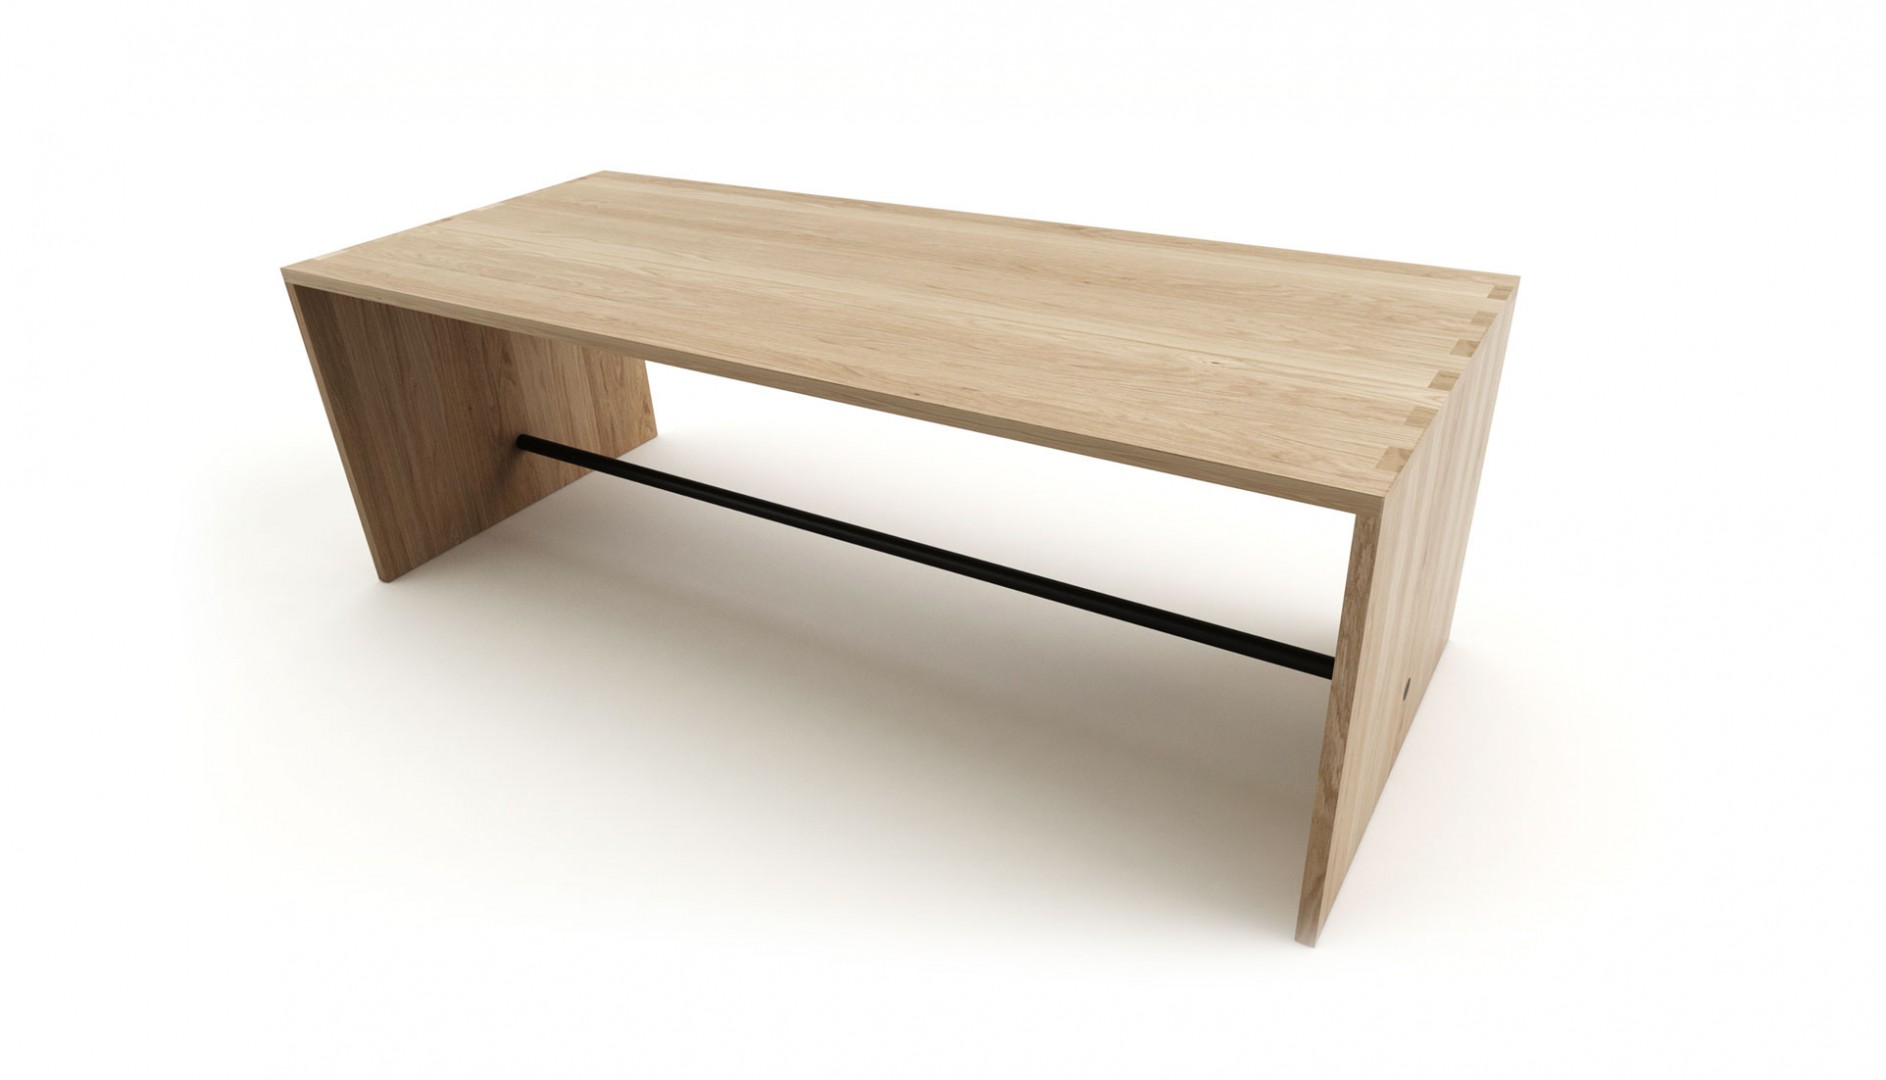 Masívny jedálenský stôl PLAN z dubového dreva, dubový minimalistický stôl, masívny dubový jedálenský stôl